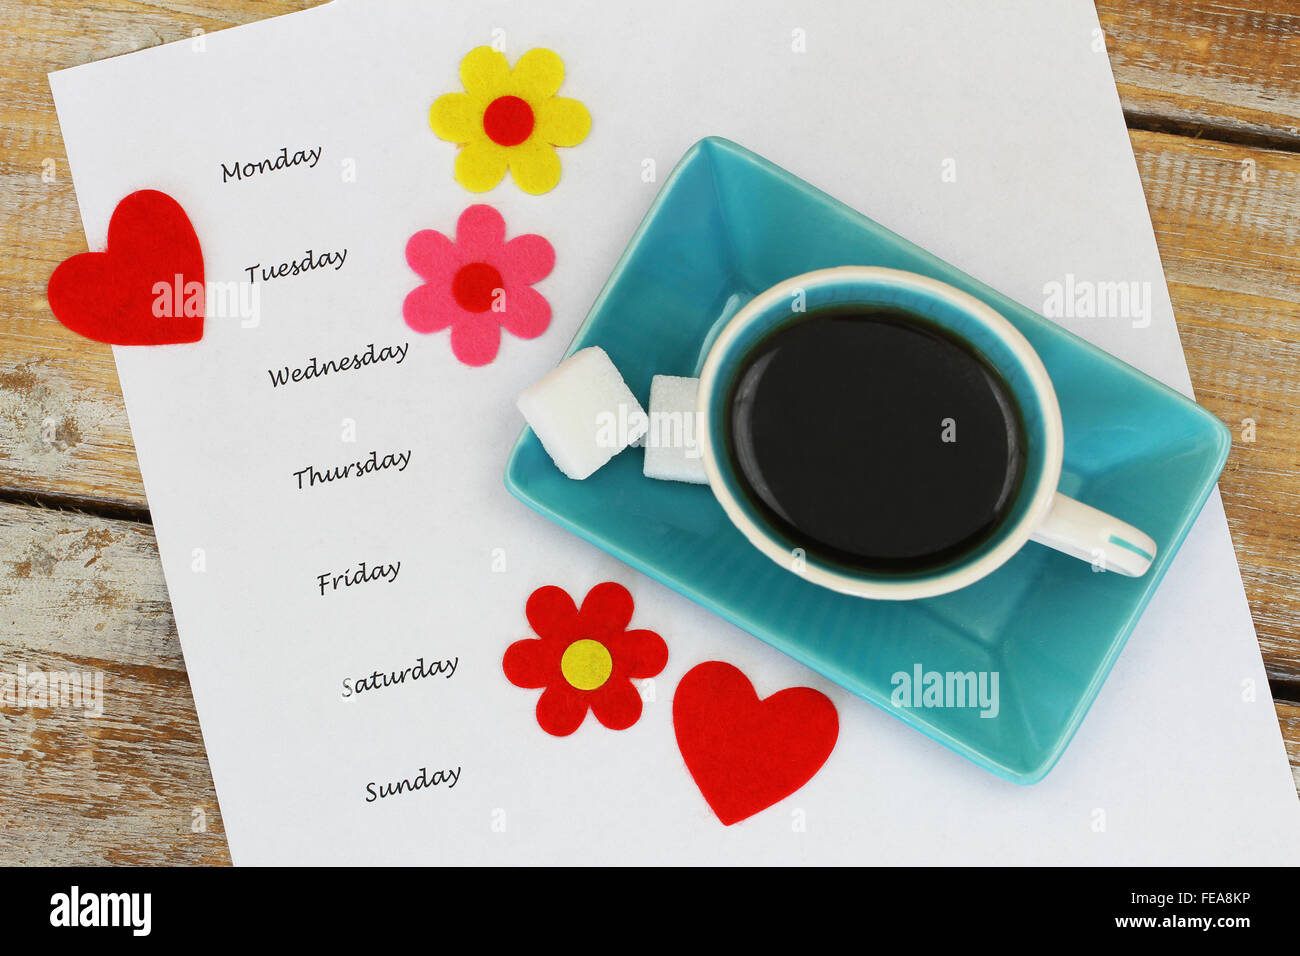 Wochentage auf weißes Blatt Papier mit Tasse Kaffee, bunten Blumen und roten Herzen geschrieben Stockfoto